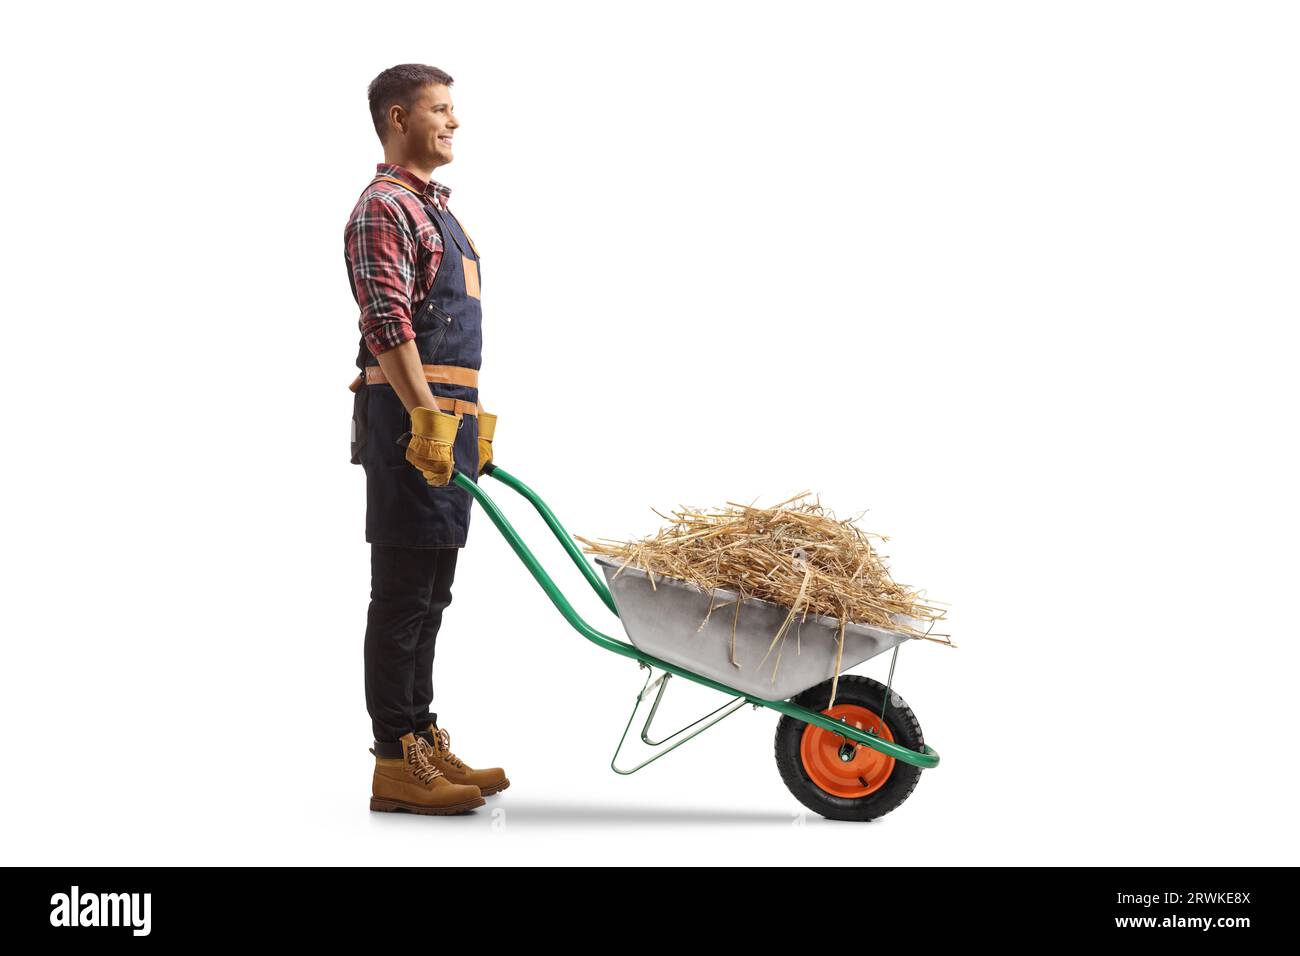 Immagine del profilo completo di un agricoltore con fieno in una carriola isolata su sfondo bianco Foto Stock